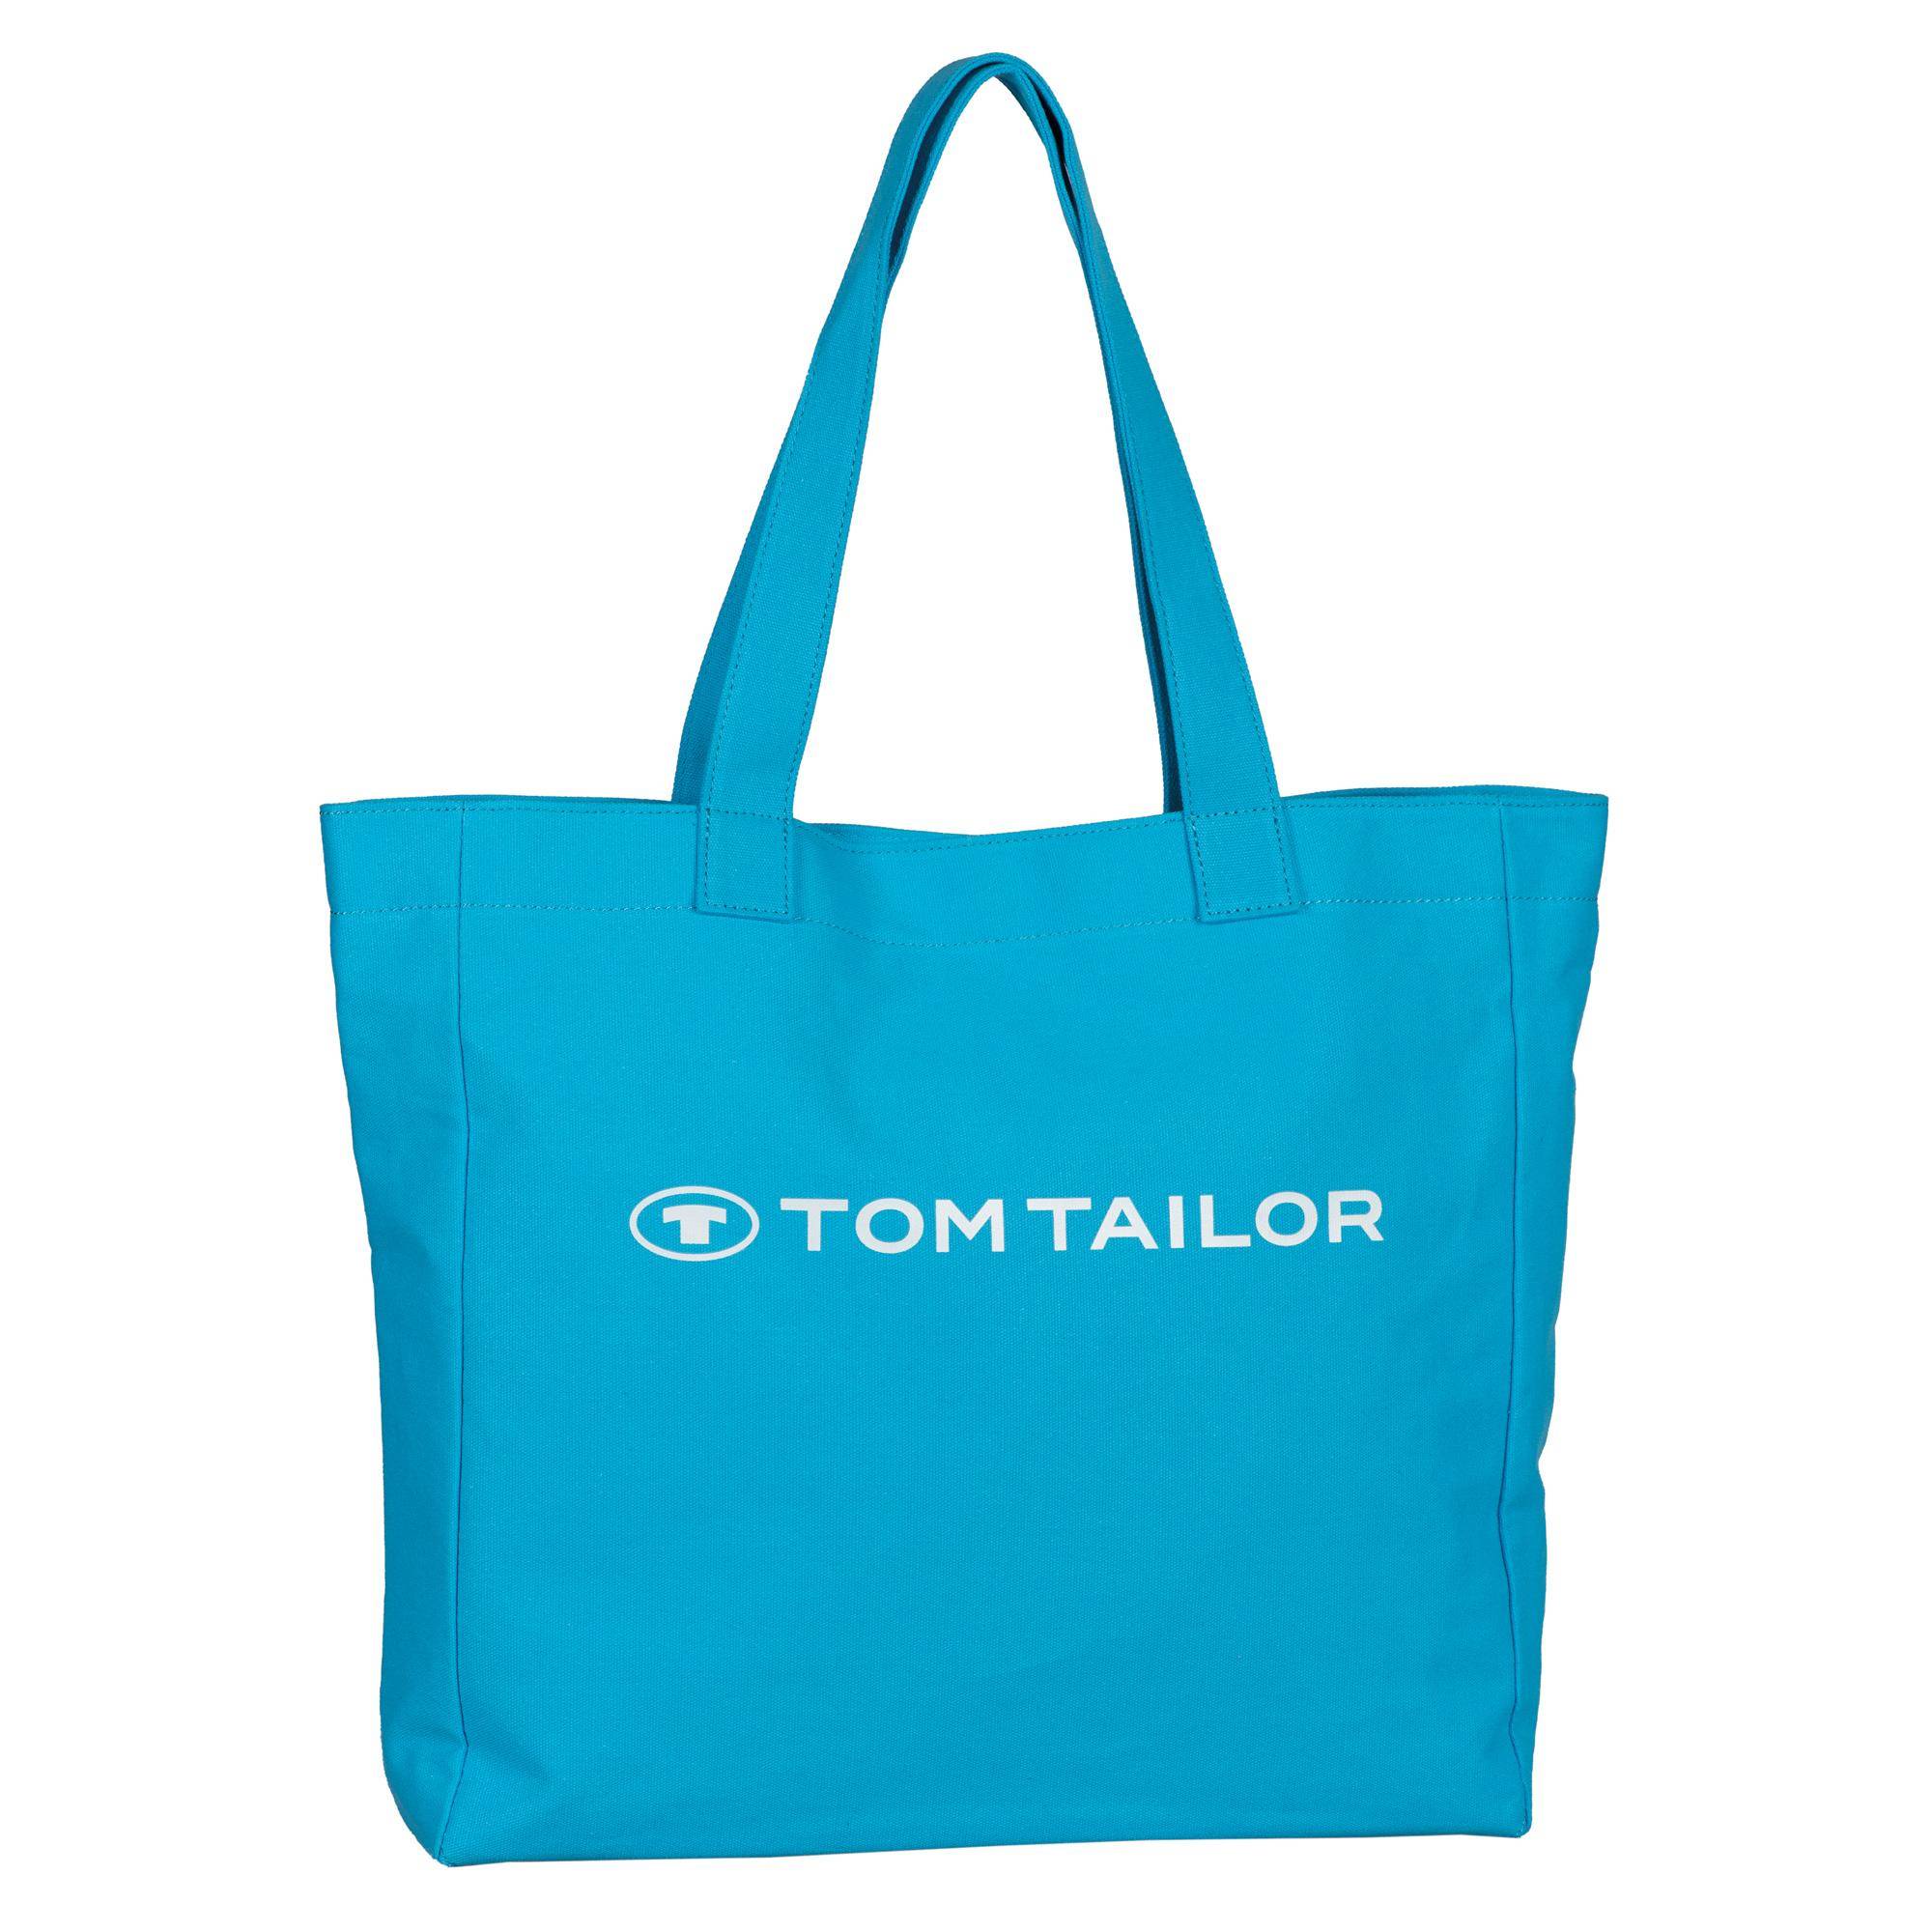 Женская сумка Tom Tailor, бежевая, Tom Tailor Bags  - купить